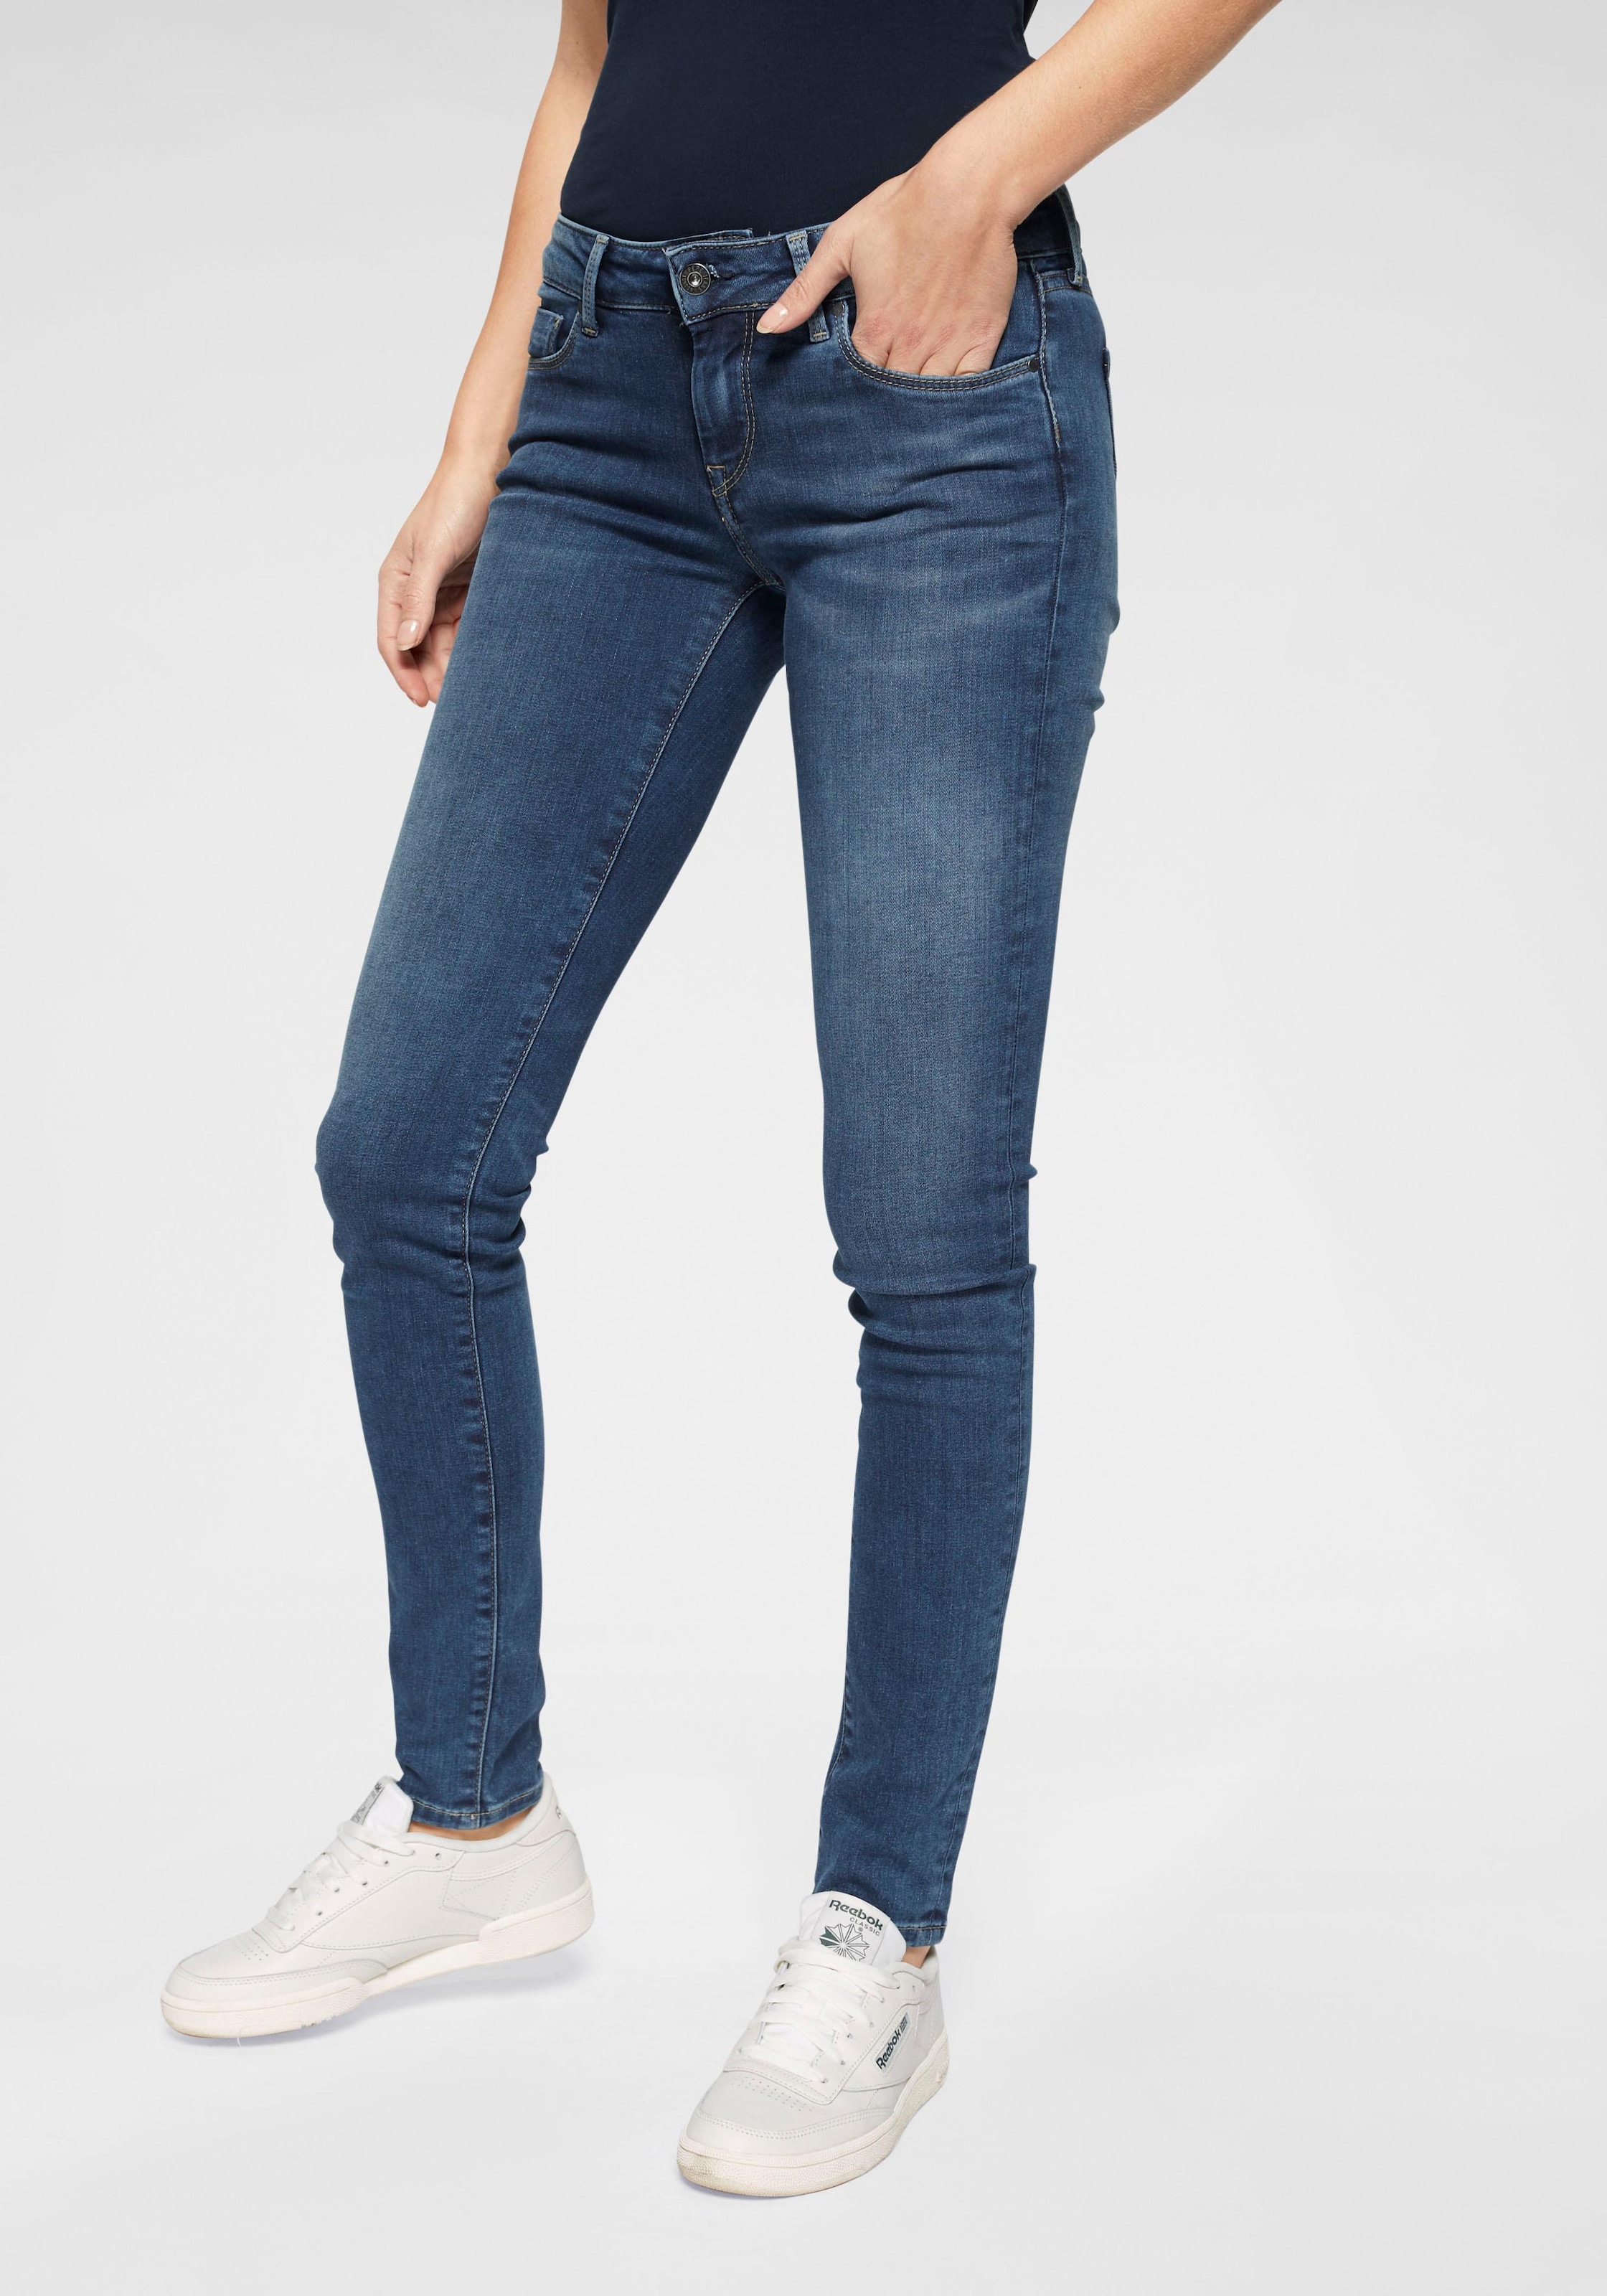 Pepe Jeans kaufen mit 1-Knopf Bund im bequem Stretch-Anteil »SOHO«, und Skinny-fit-Jeans 5-Pocket-Stil